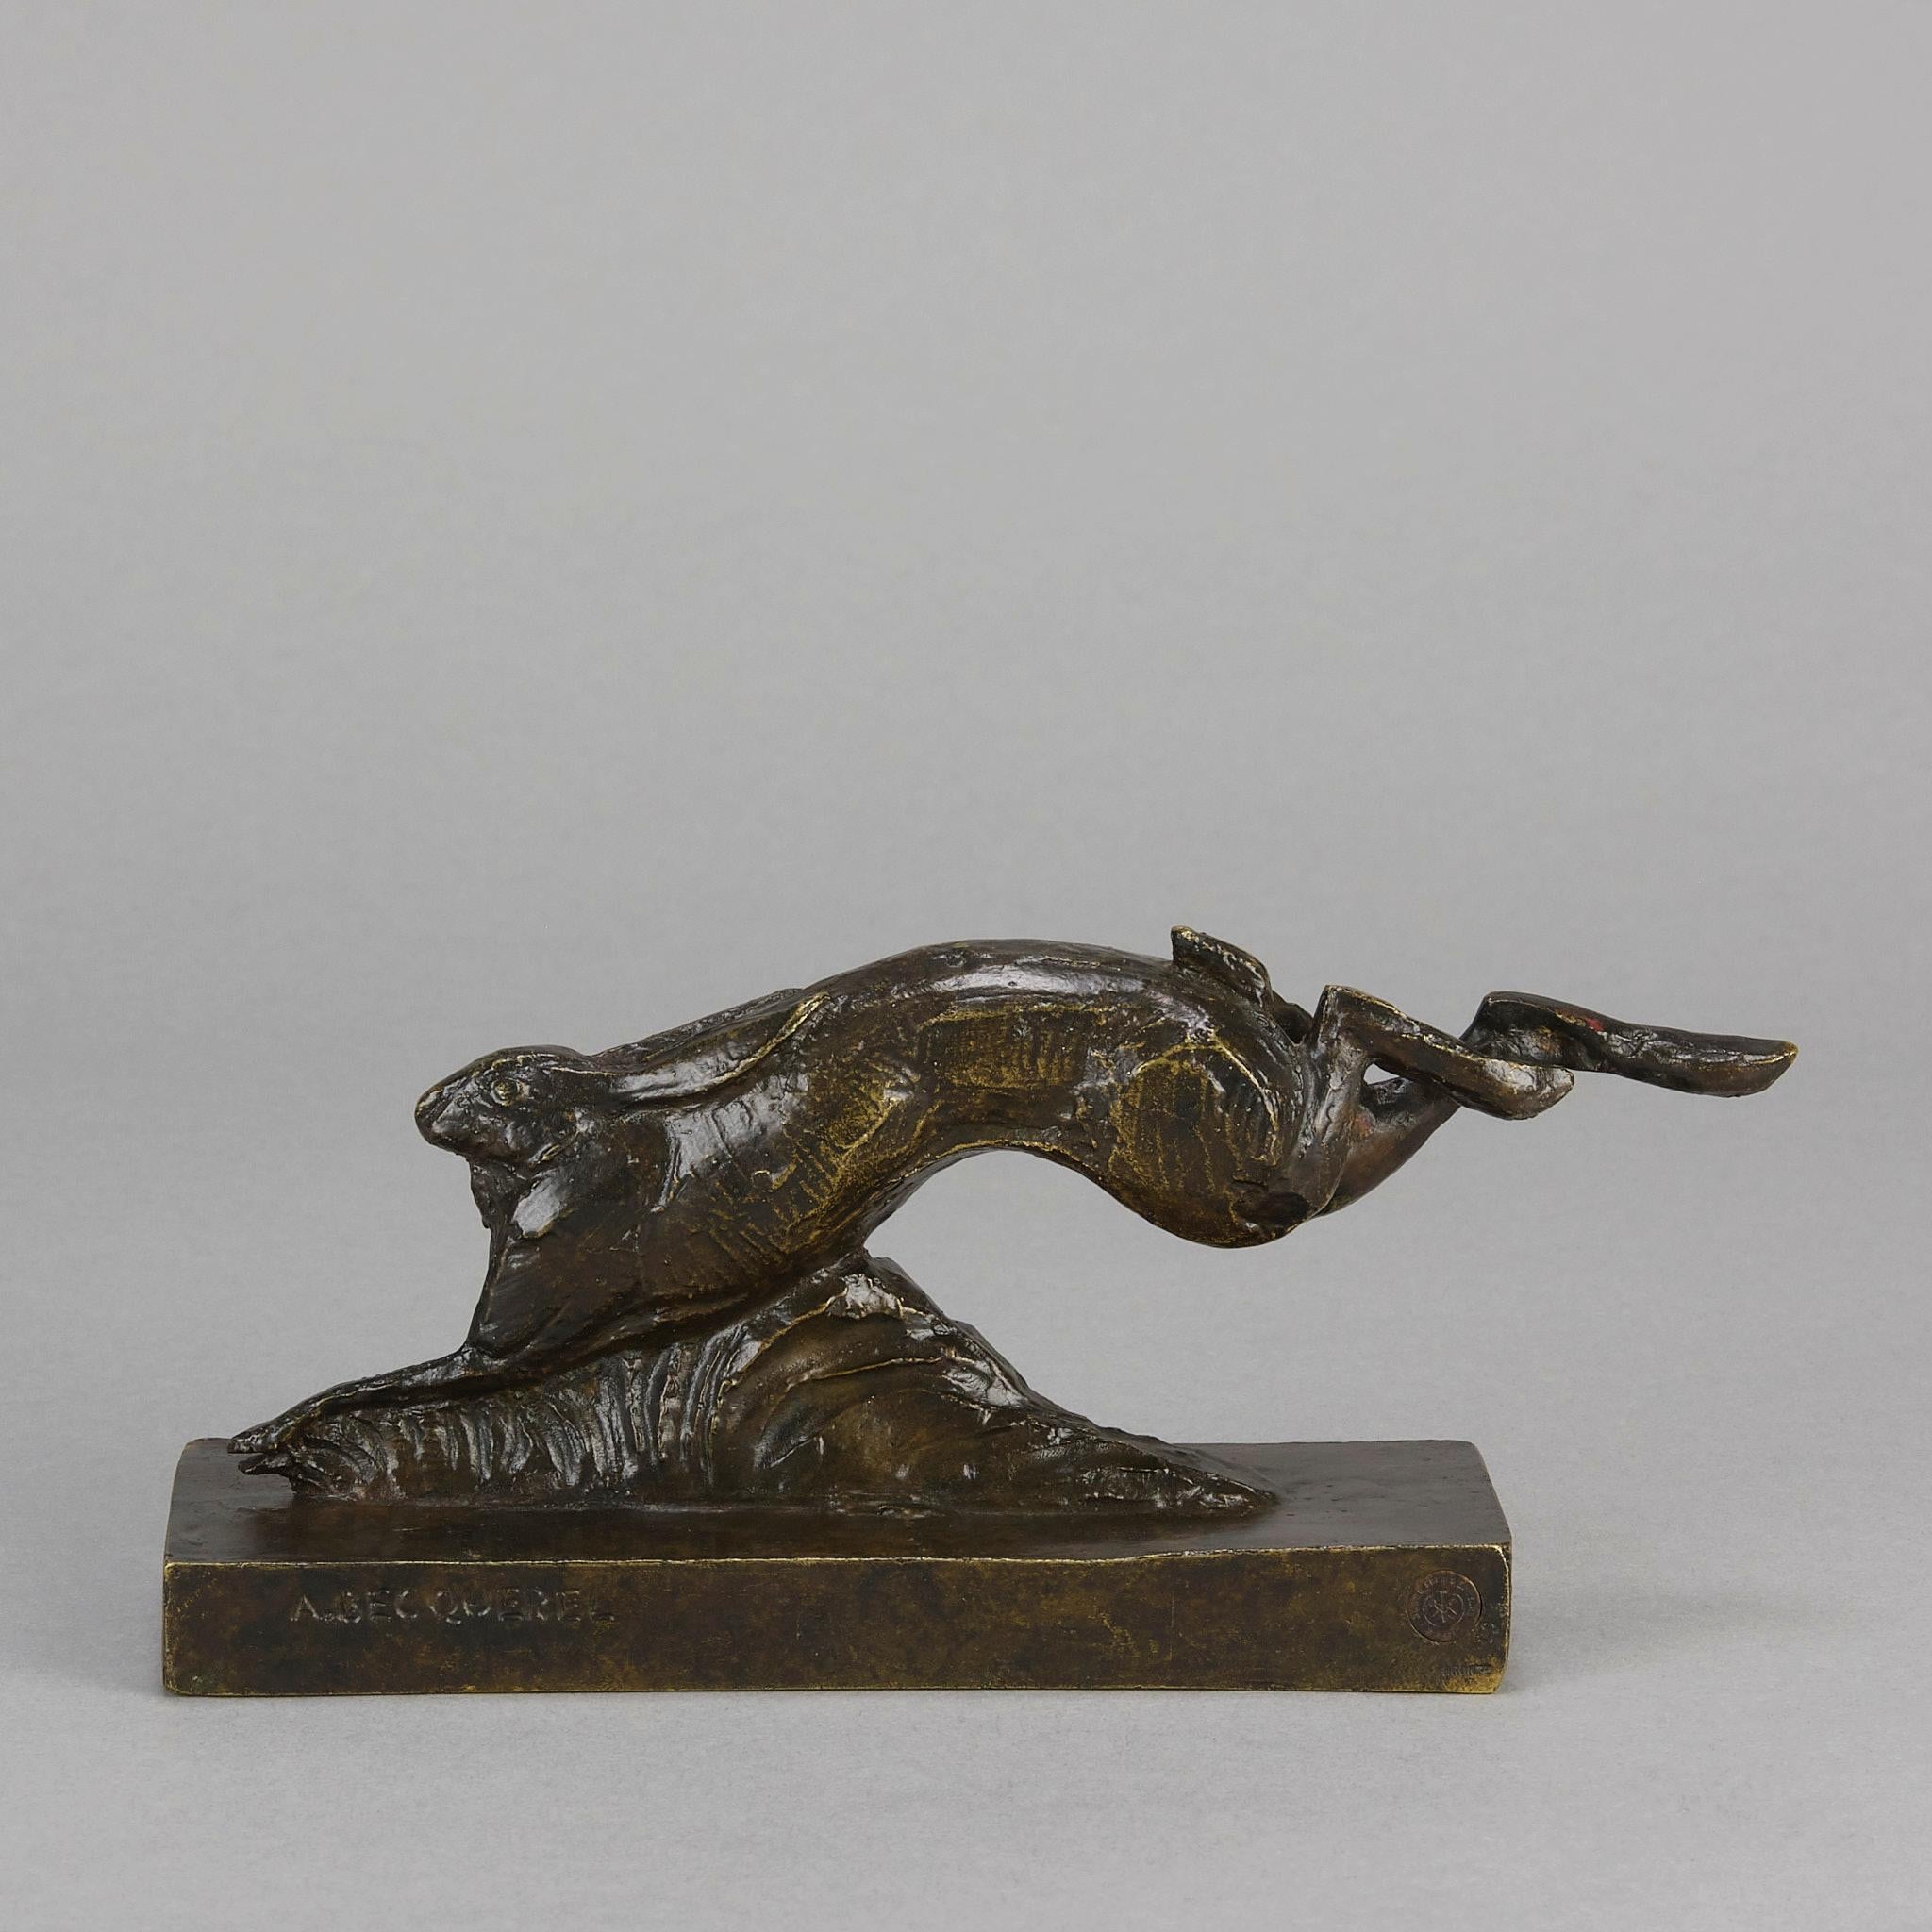 Excellente étude en bronze Art déco du début du XXe siècle, représentant un lièvre stylisé en train de courir. La couleur est très fine, légèrement frottée pour obtenir une teinte dorée, et les détails de la surface sont bien finis à la main. Posé